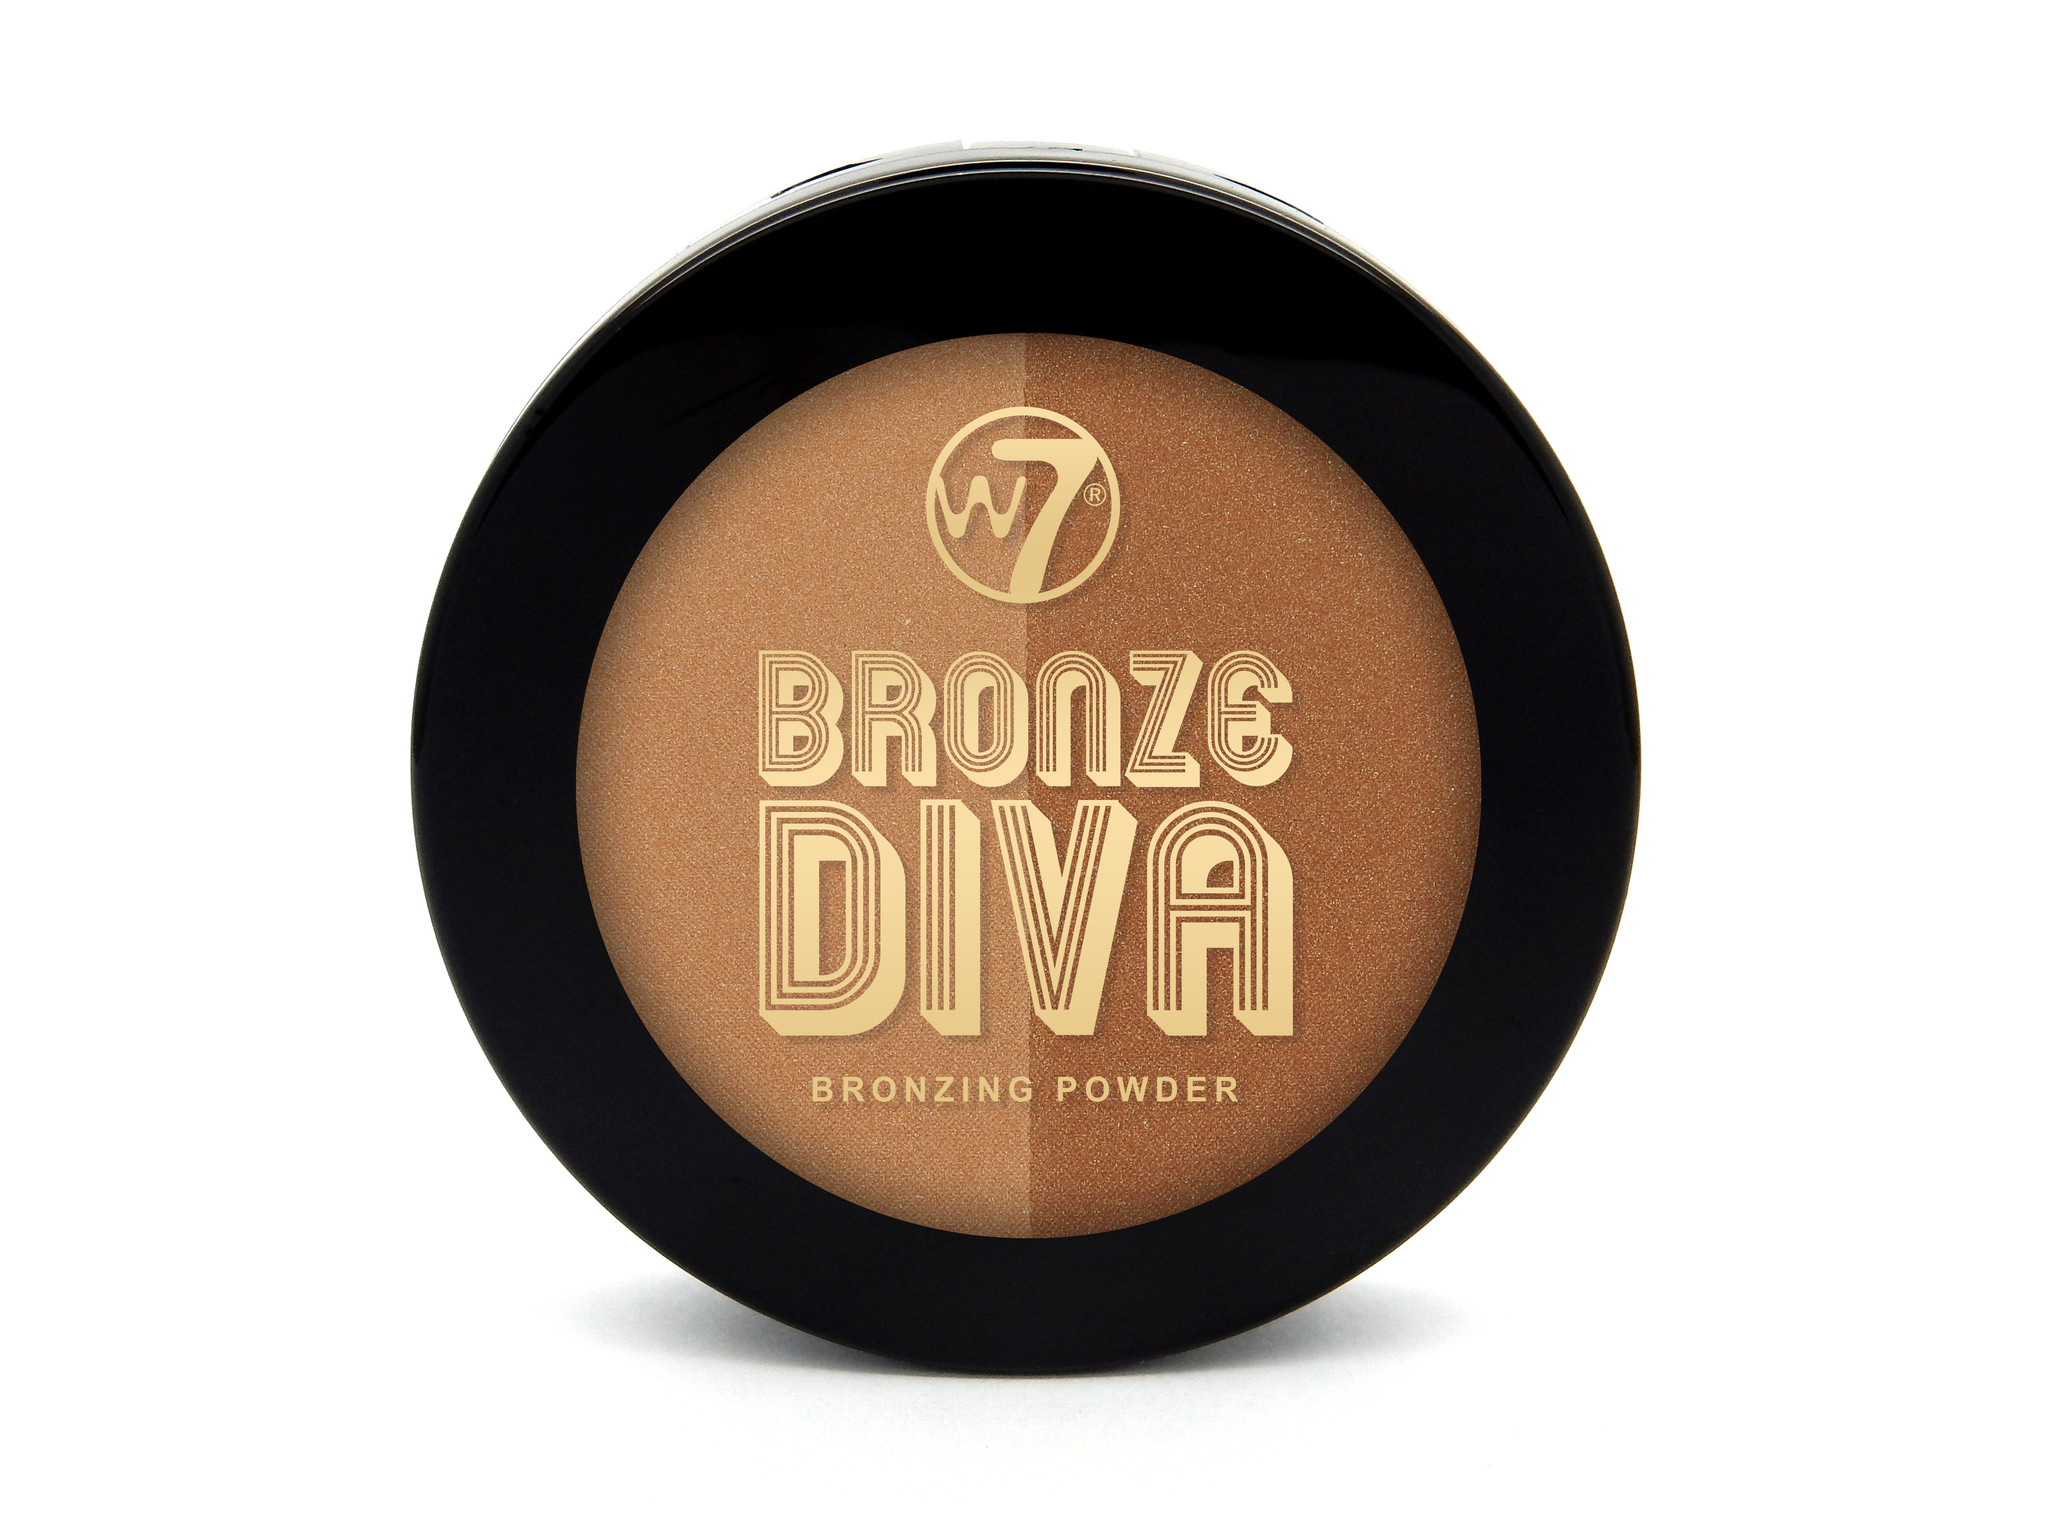 W7 Bronze Diva - Bronzed